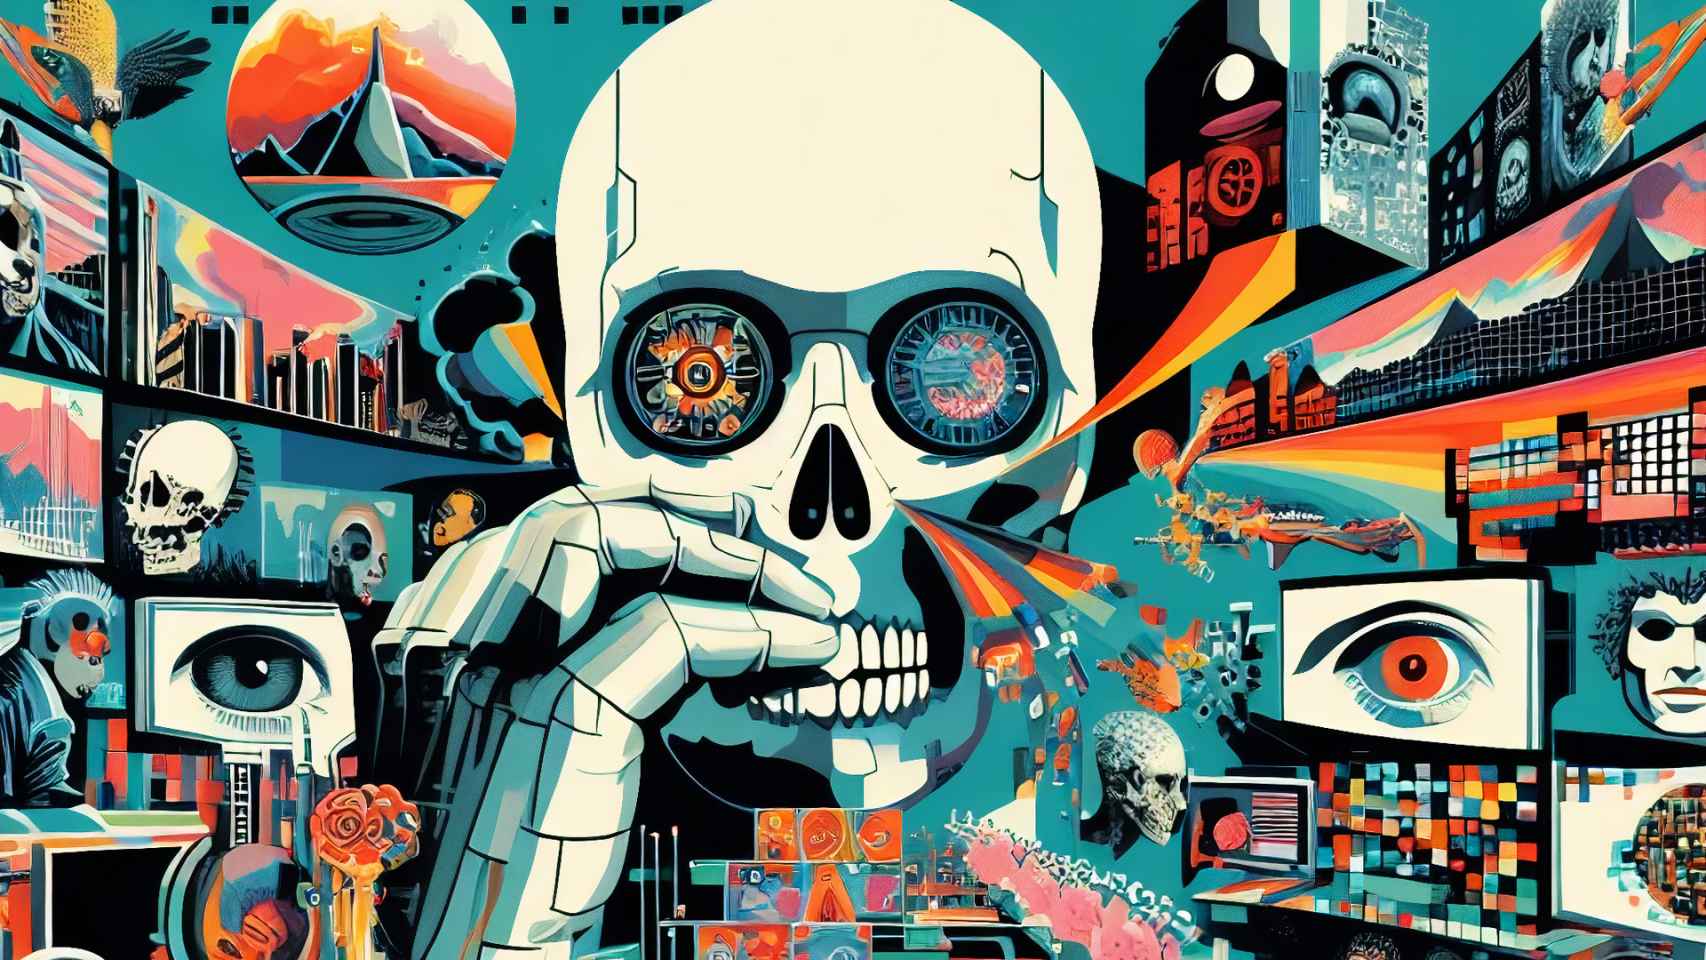 Un mundo gobernado por inteligencias artificiales al estilo de la portada del álbum Amused to death de Roger Waters.